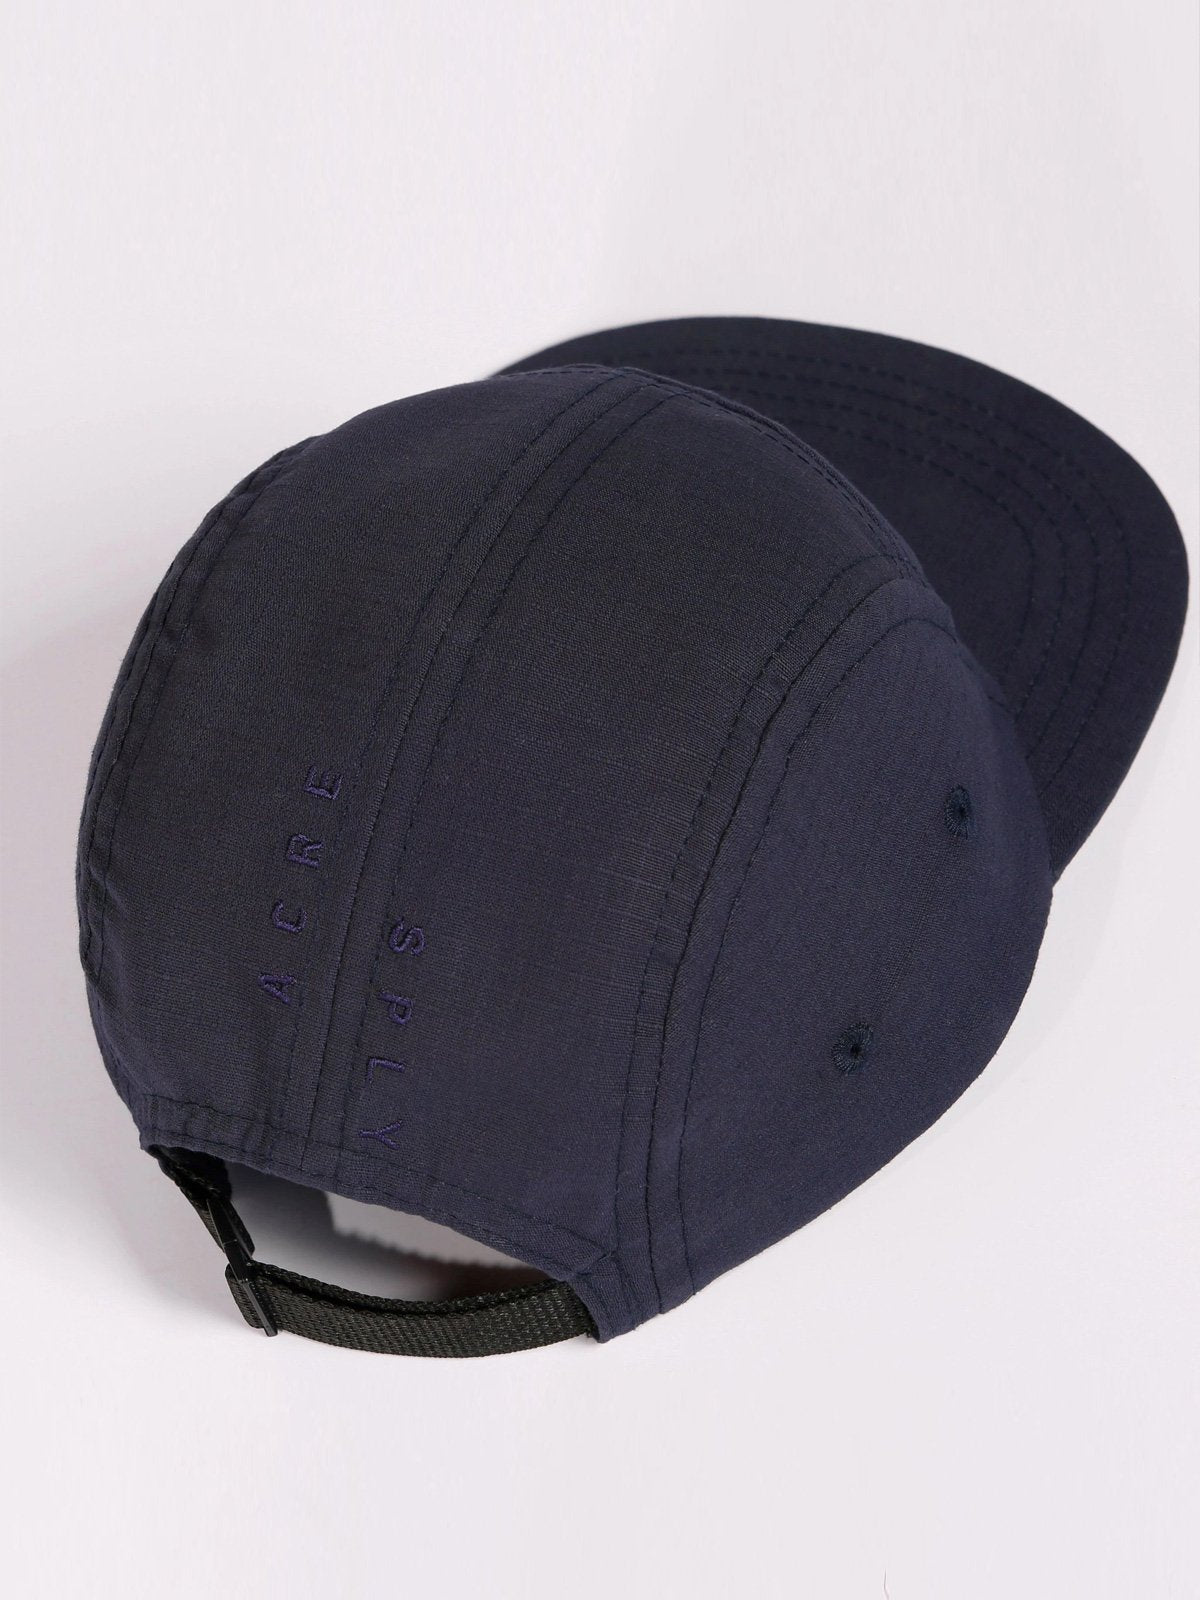 Farik Five Panel Hat by Mission Workshop - Bolsas impermeables y ropa técnica - San Francisco y Los Angeles - Construido para durar - Garantizado para siempre